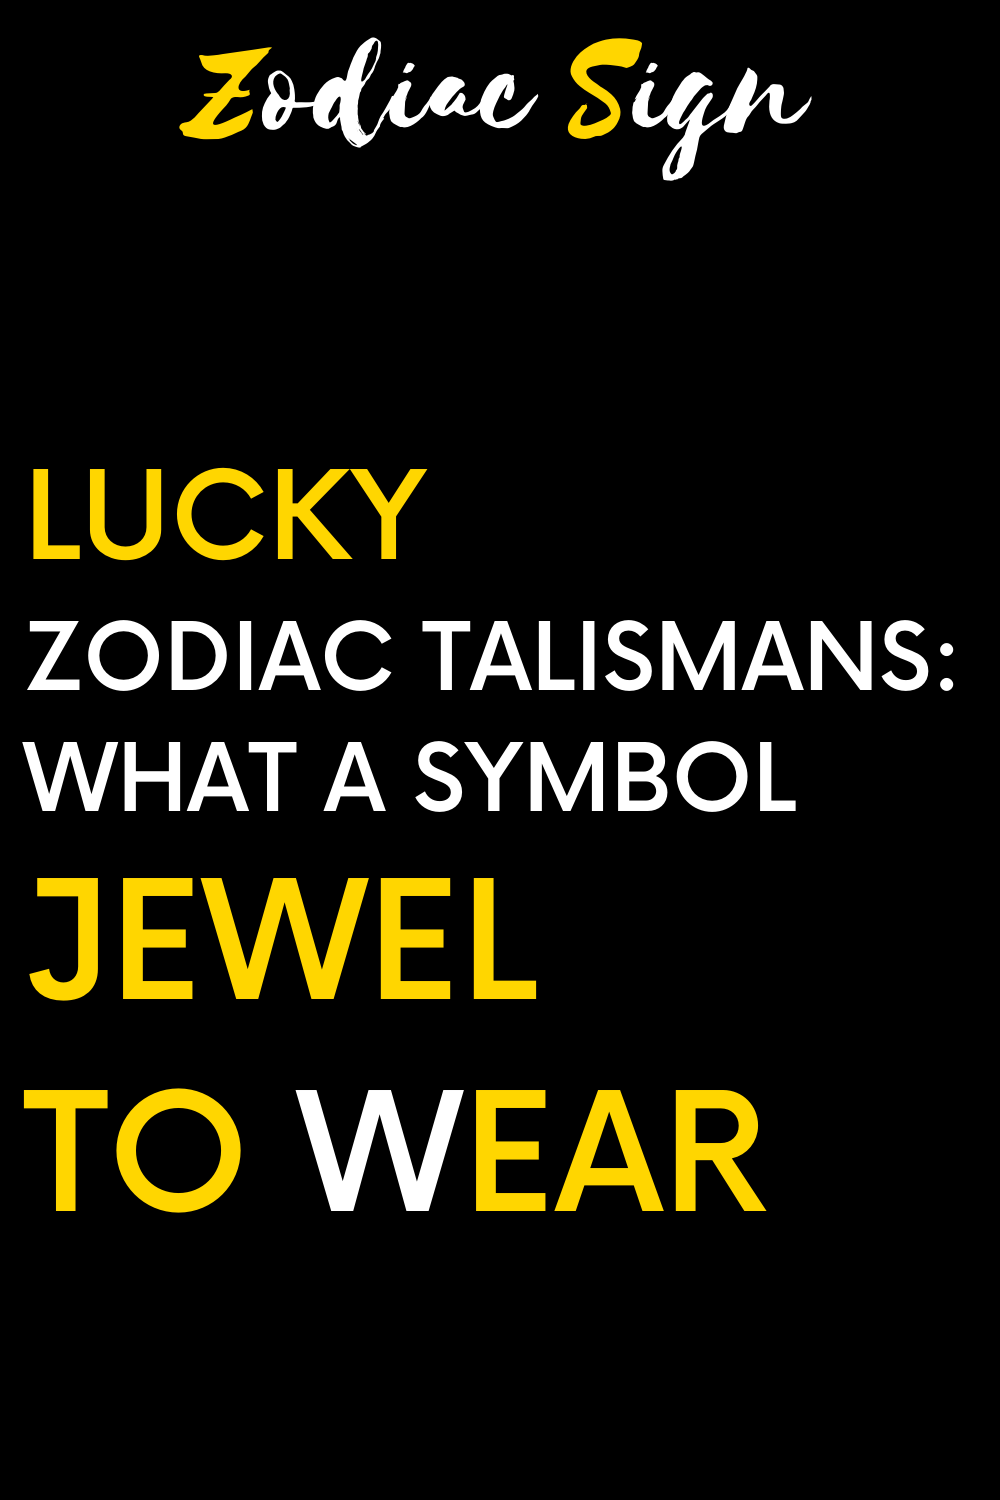 Lucky zodiac talismans: What a symbol jewel to wear